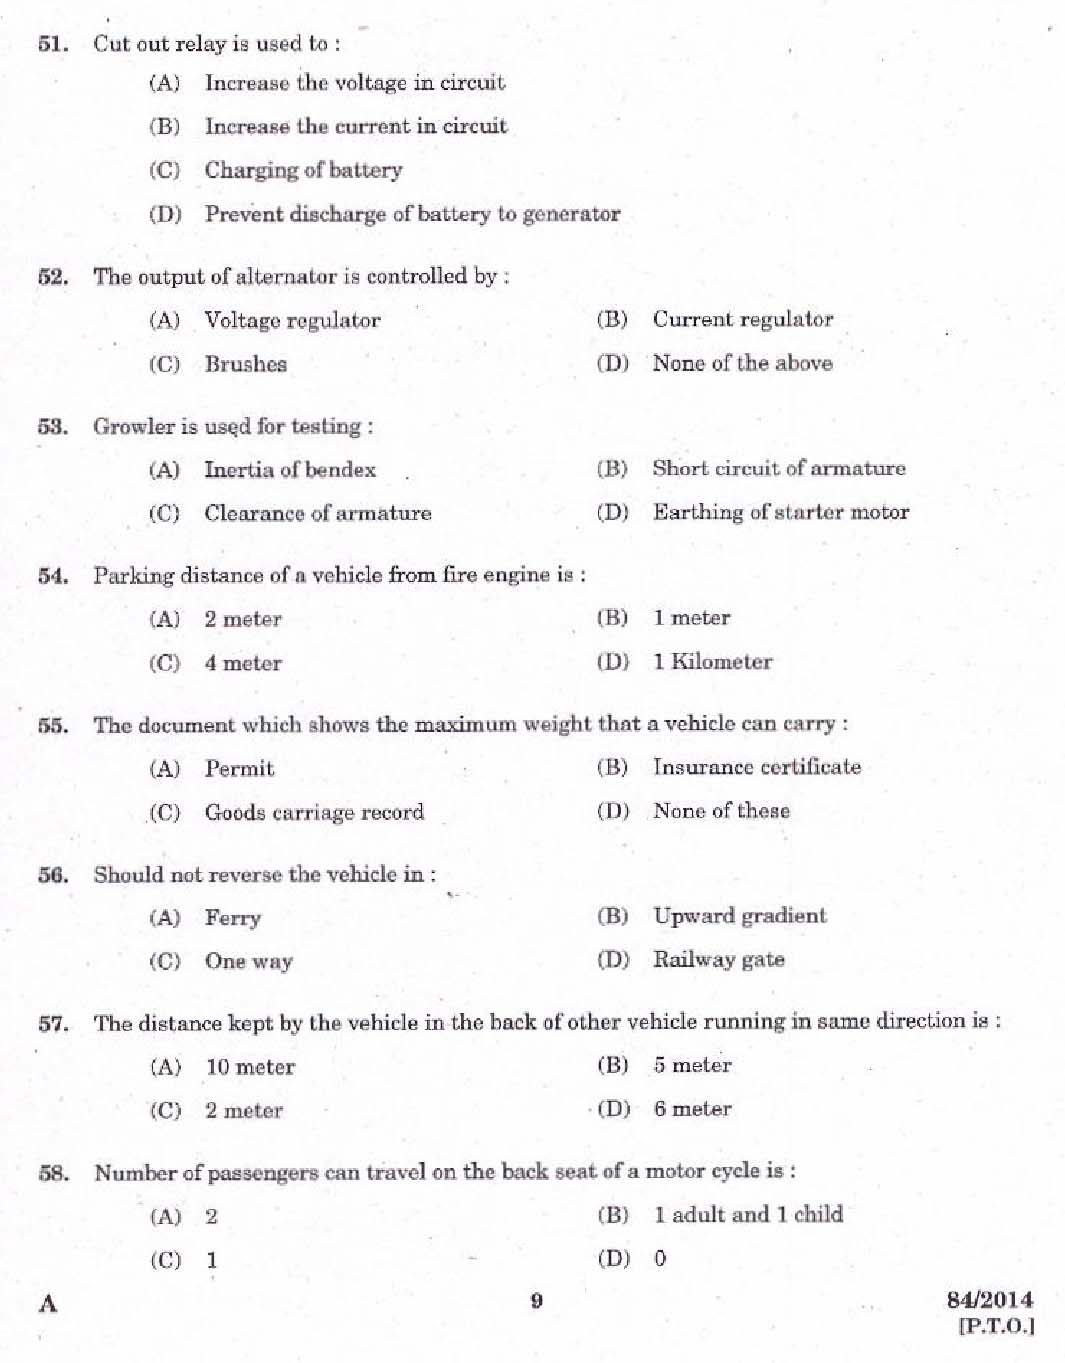 Kerala PSC Junior Instructor Exam 2014 Question Paper Code 842014 7